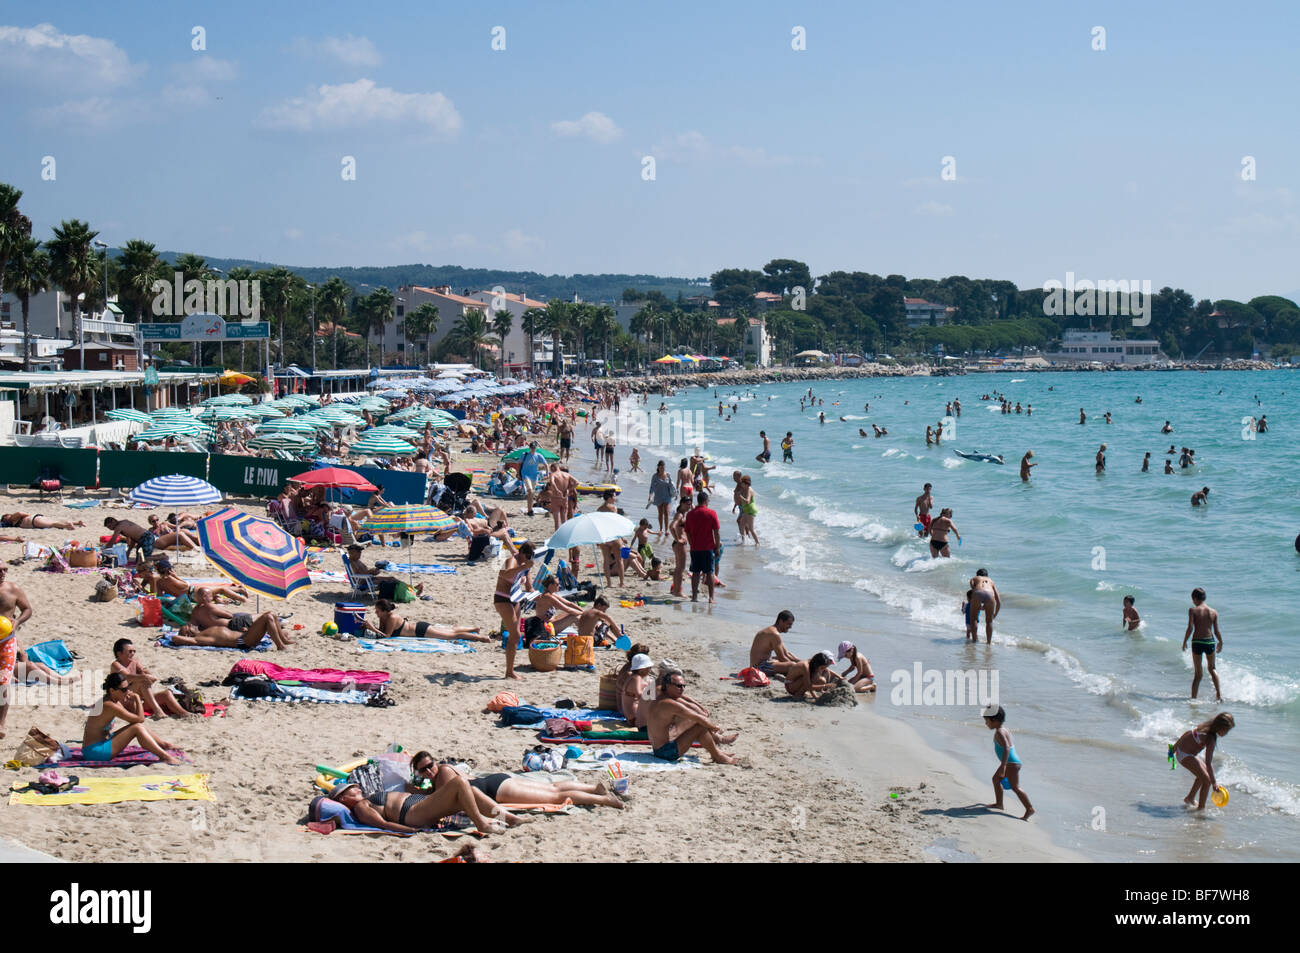 Plage de sable fin de la Ciotat, Côte d'Azur, Sud France Banque D'Images